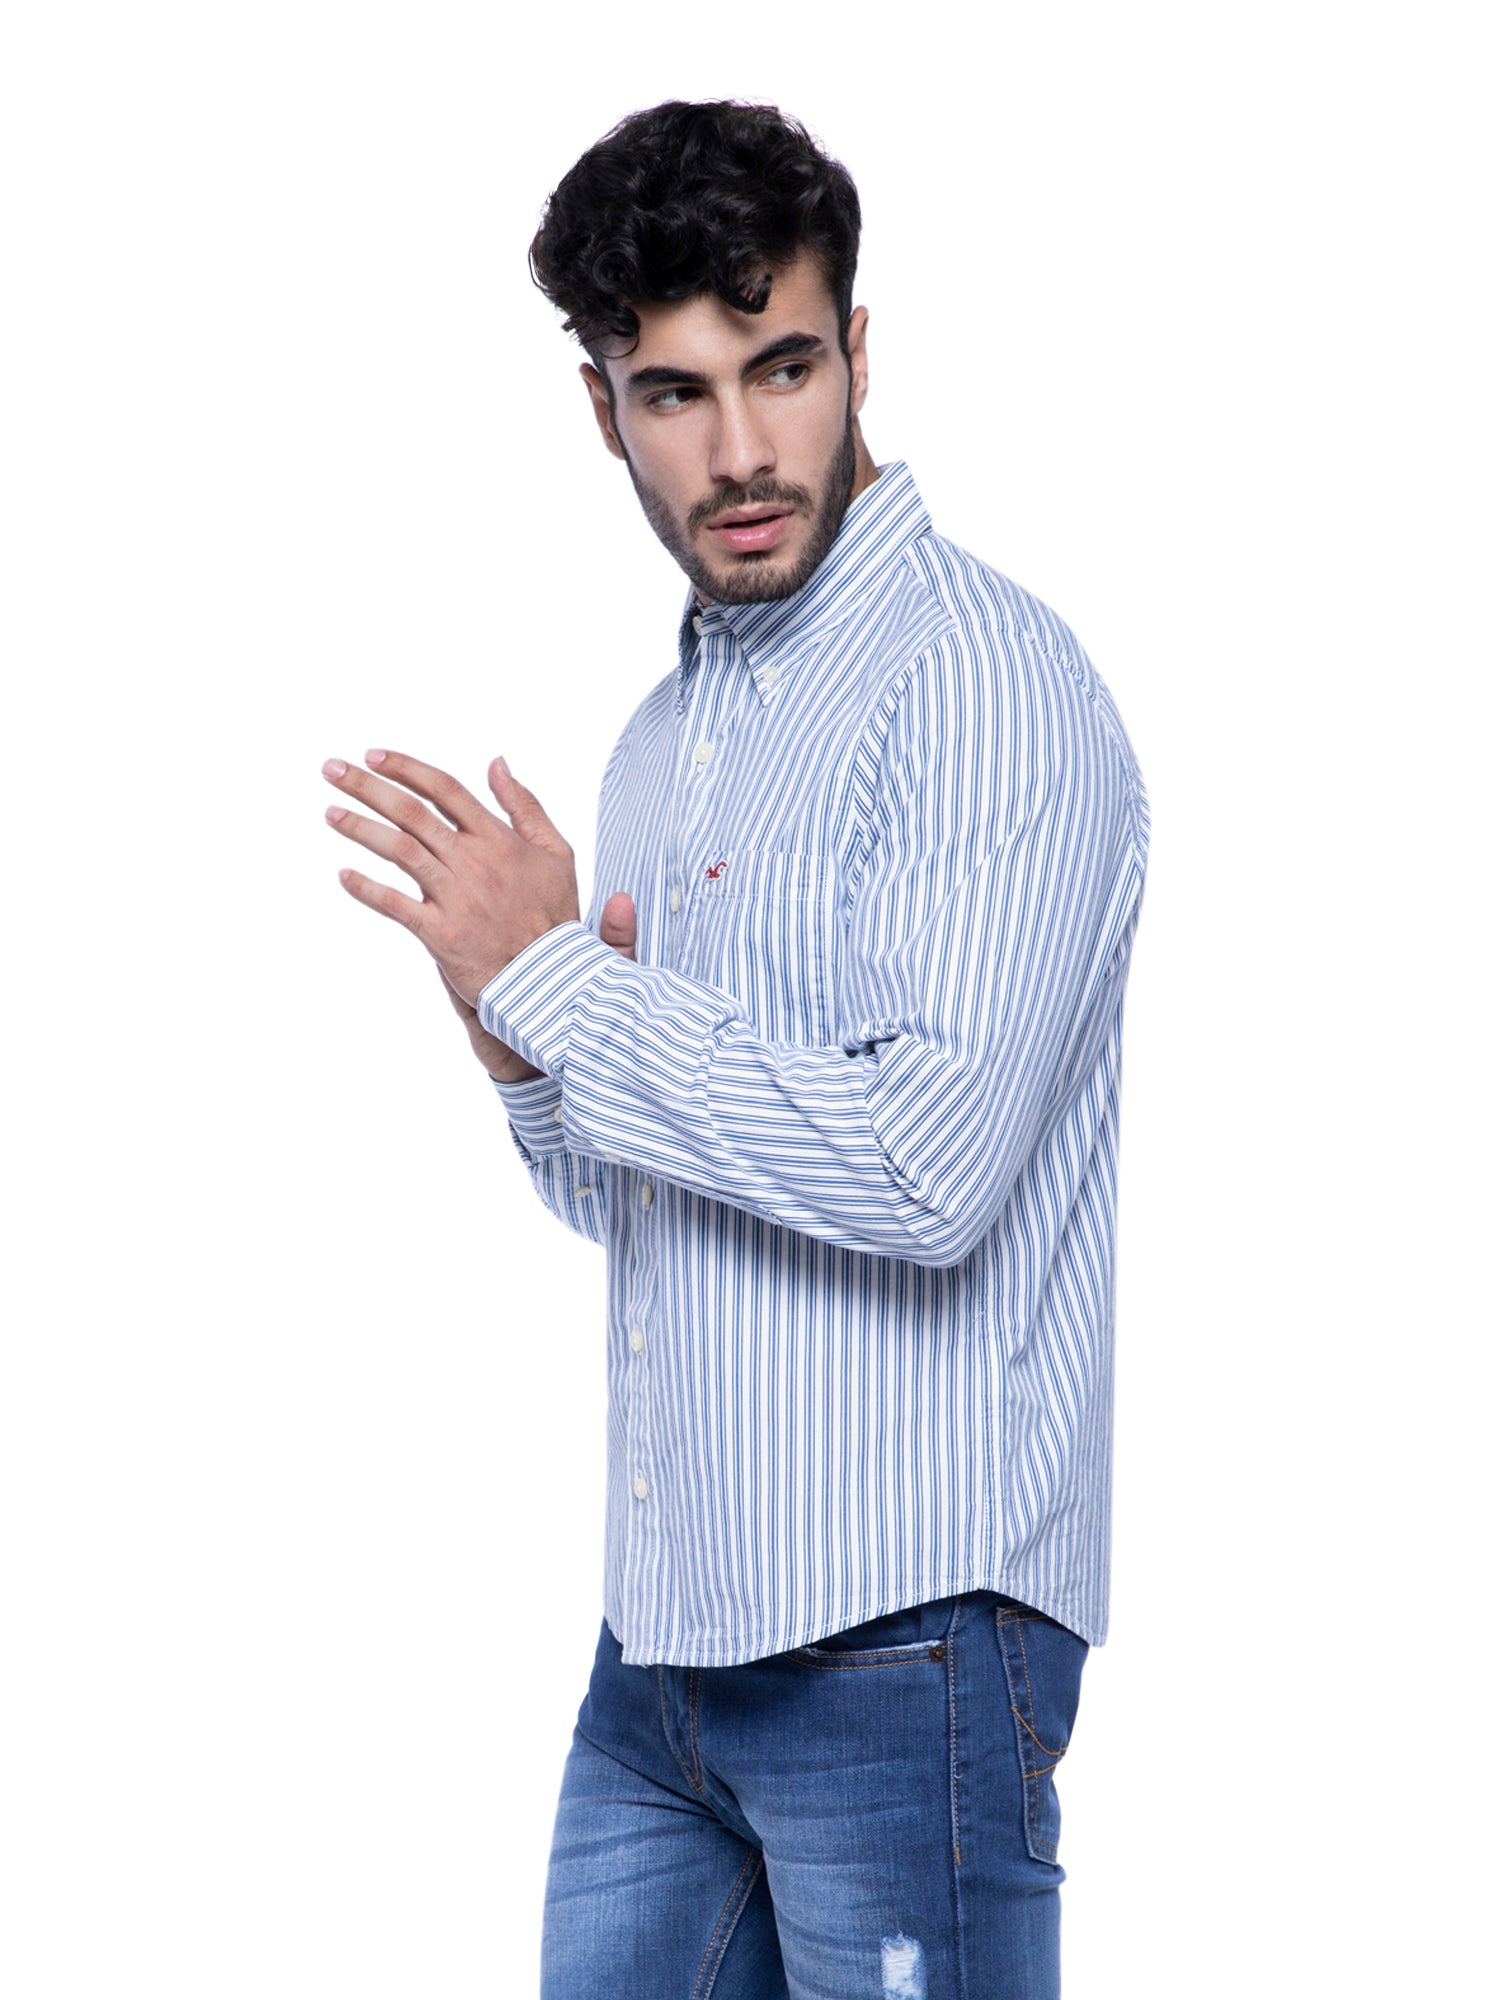 Hollister Long Sleeve Button Shirt Men's XL White Blue Striped